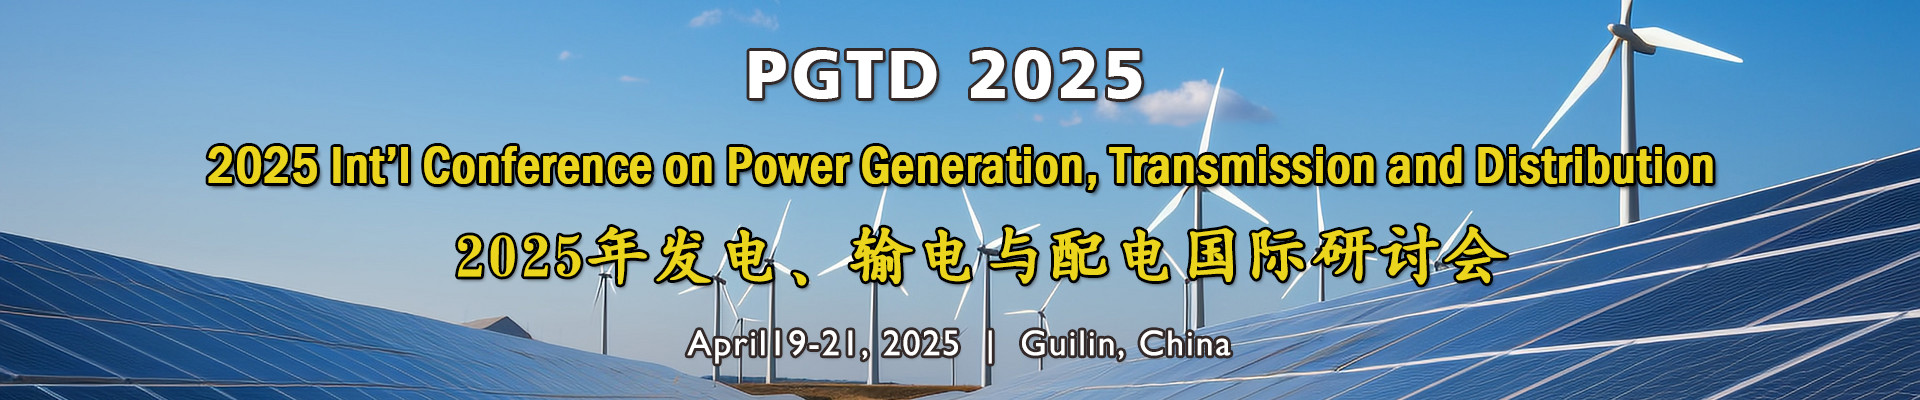 第四届发电、输电与配电国际研讨会（PGTD 2025）